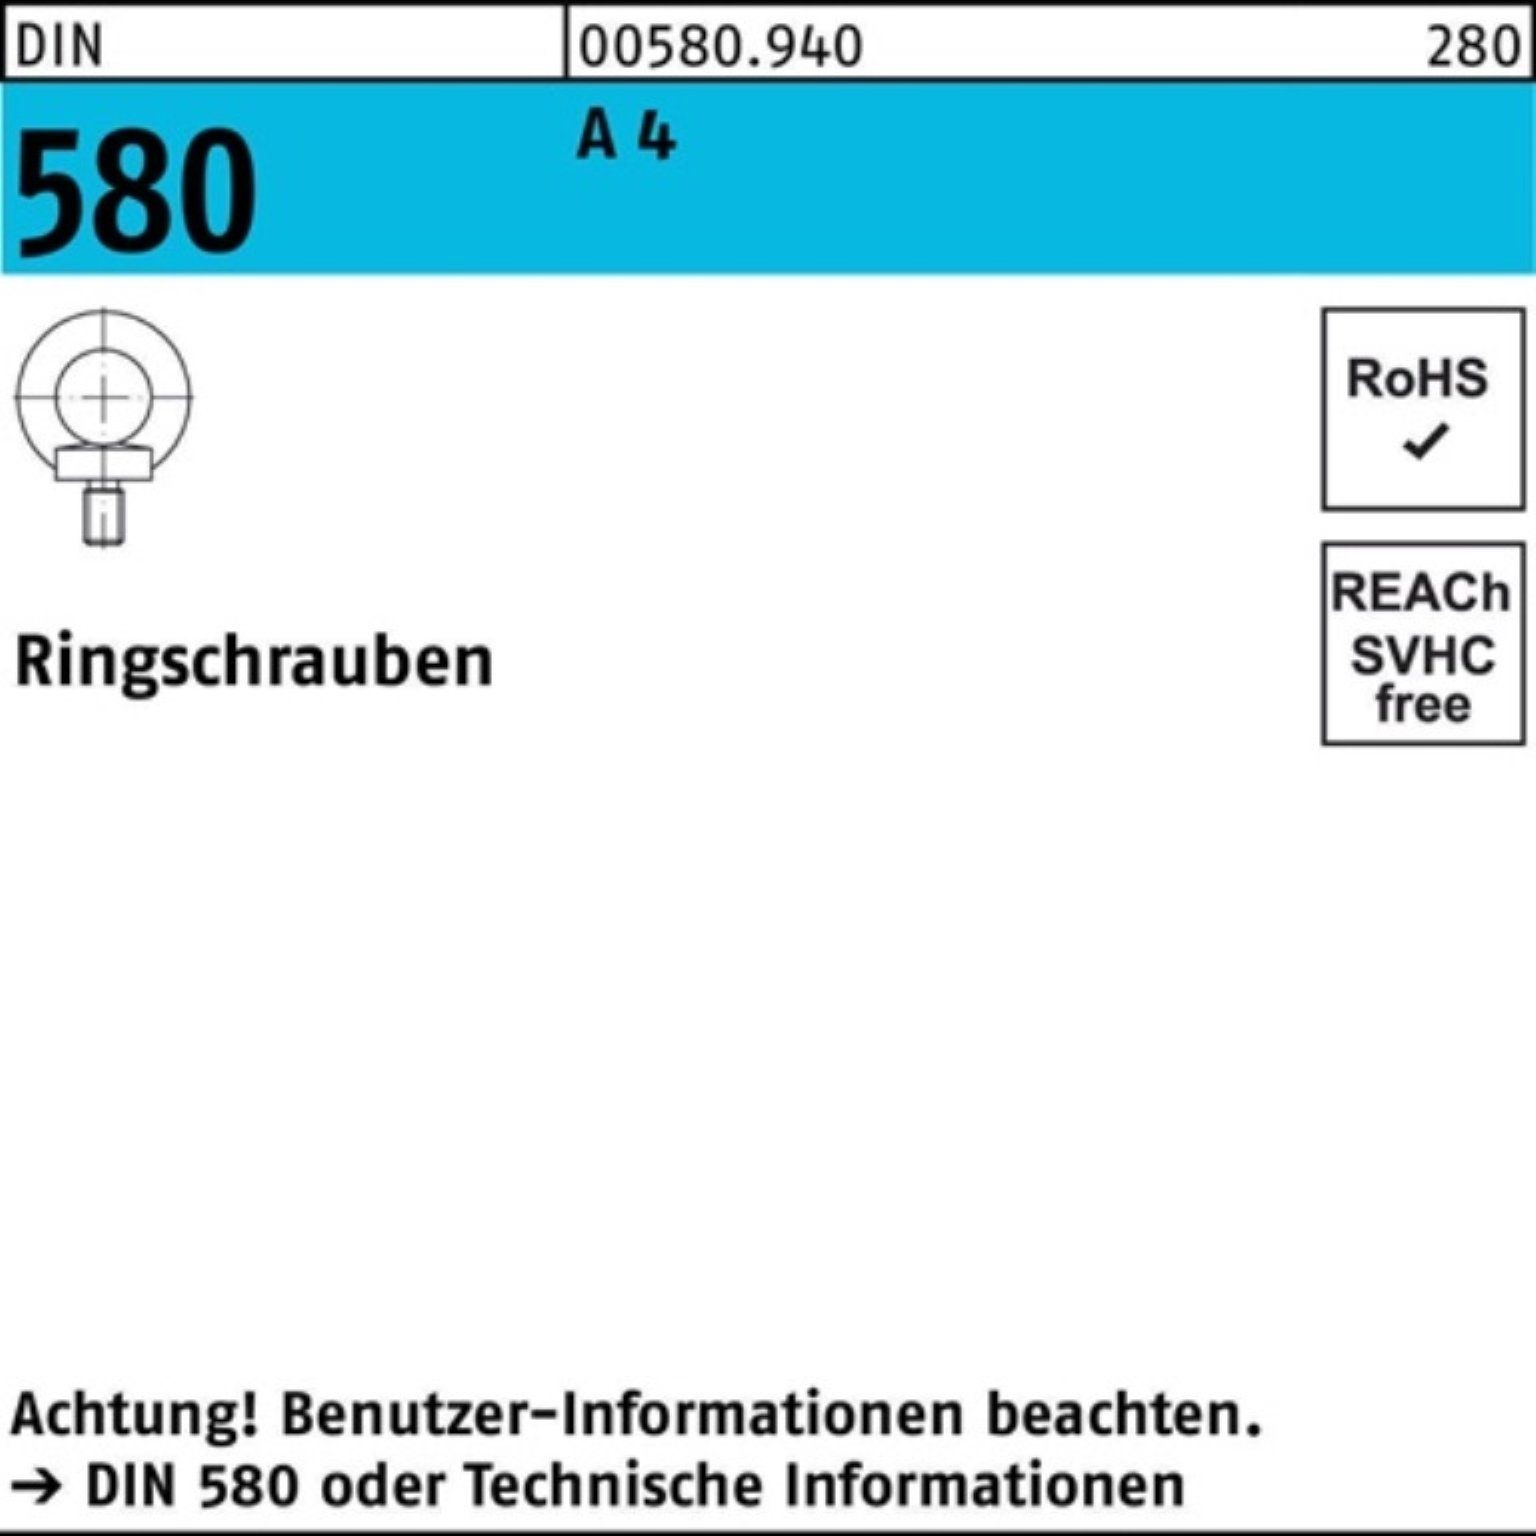 Reyher Schraube 100er Pack Ringschraube DIN 580 M12 A 4 1 Stück DIN 580 A 4 Ringschra